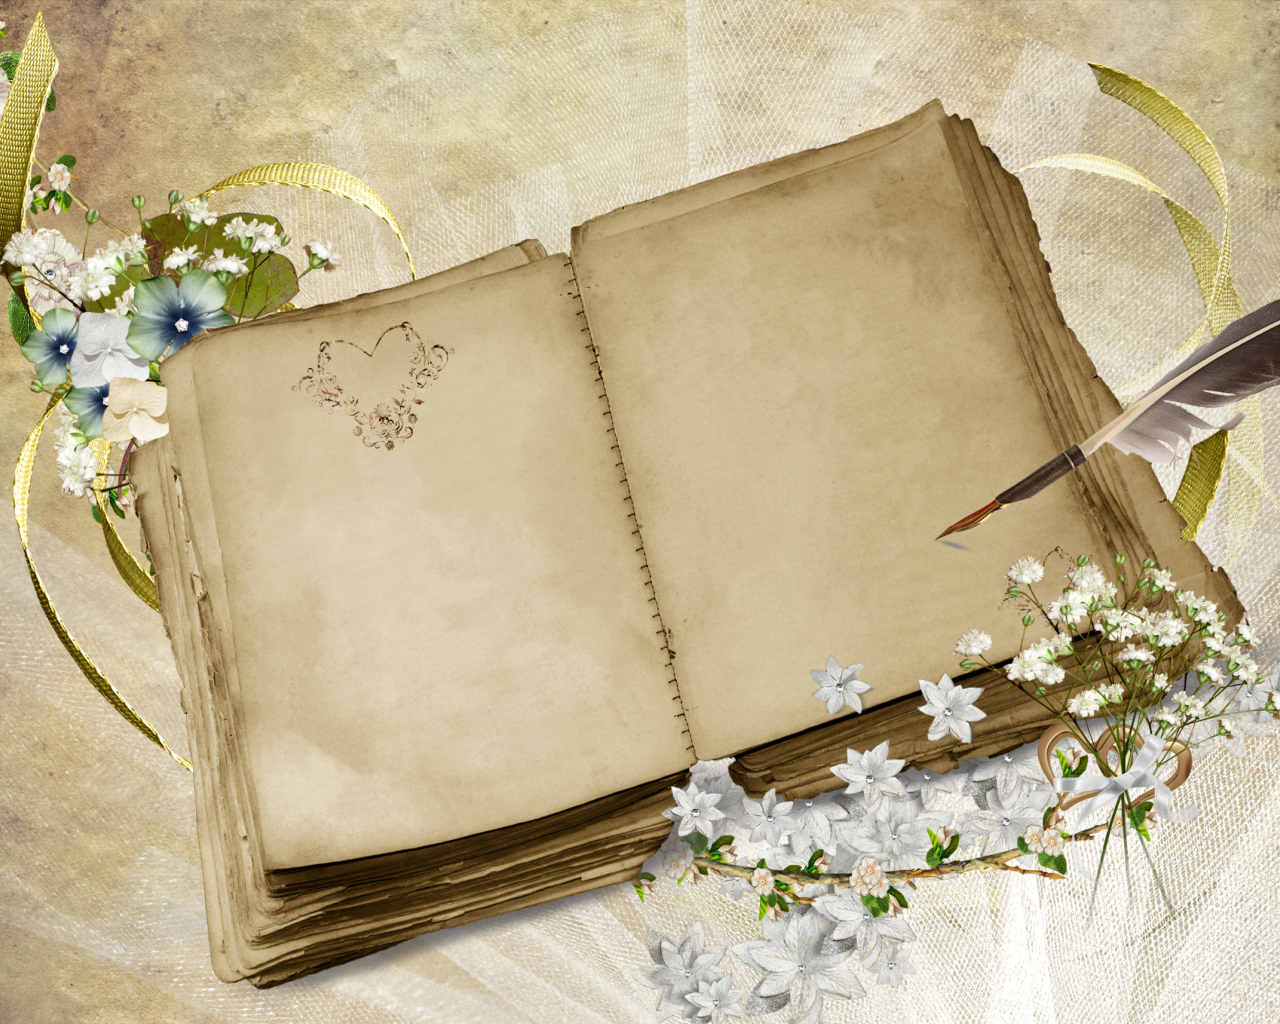 Старая книга с пером и цветами, шаблон для поздравительной открытки